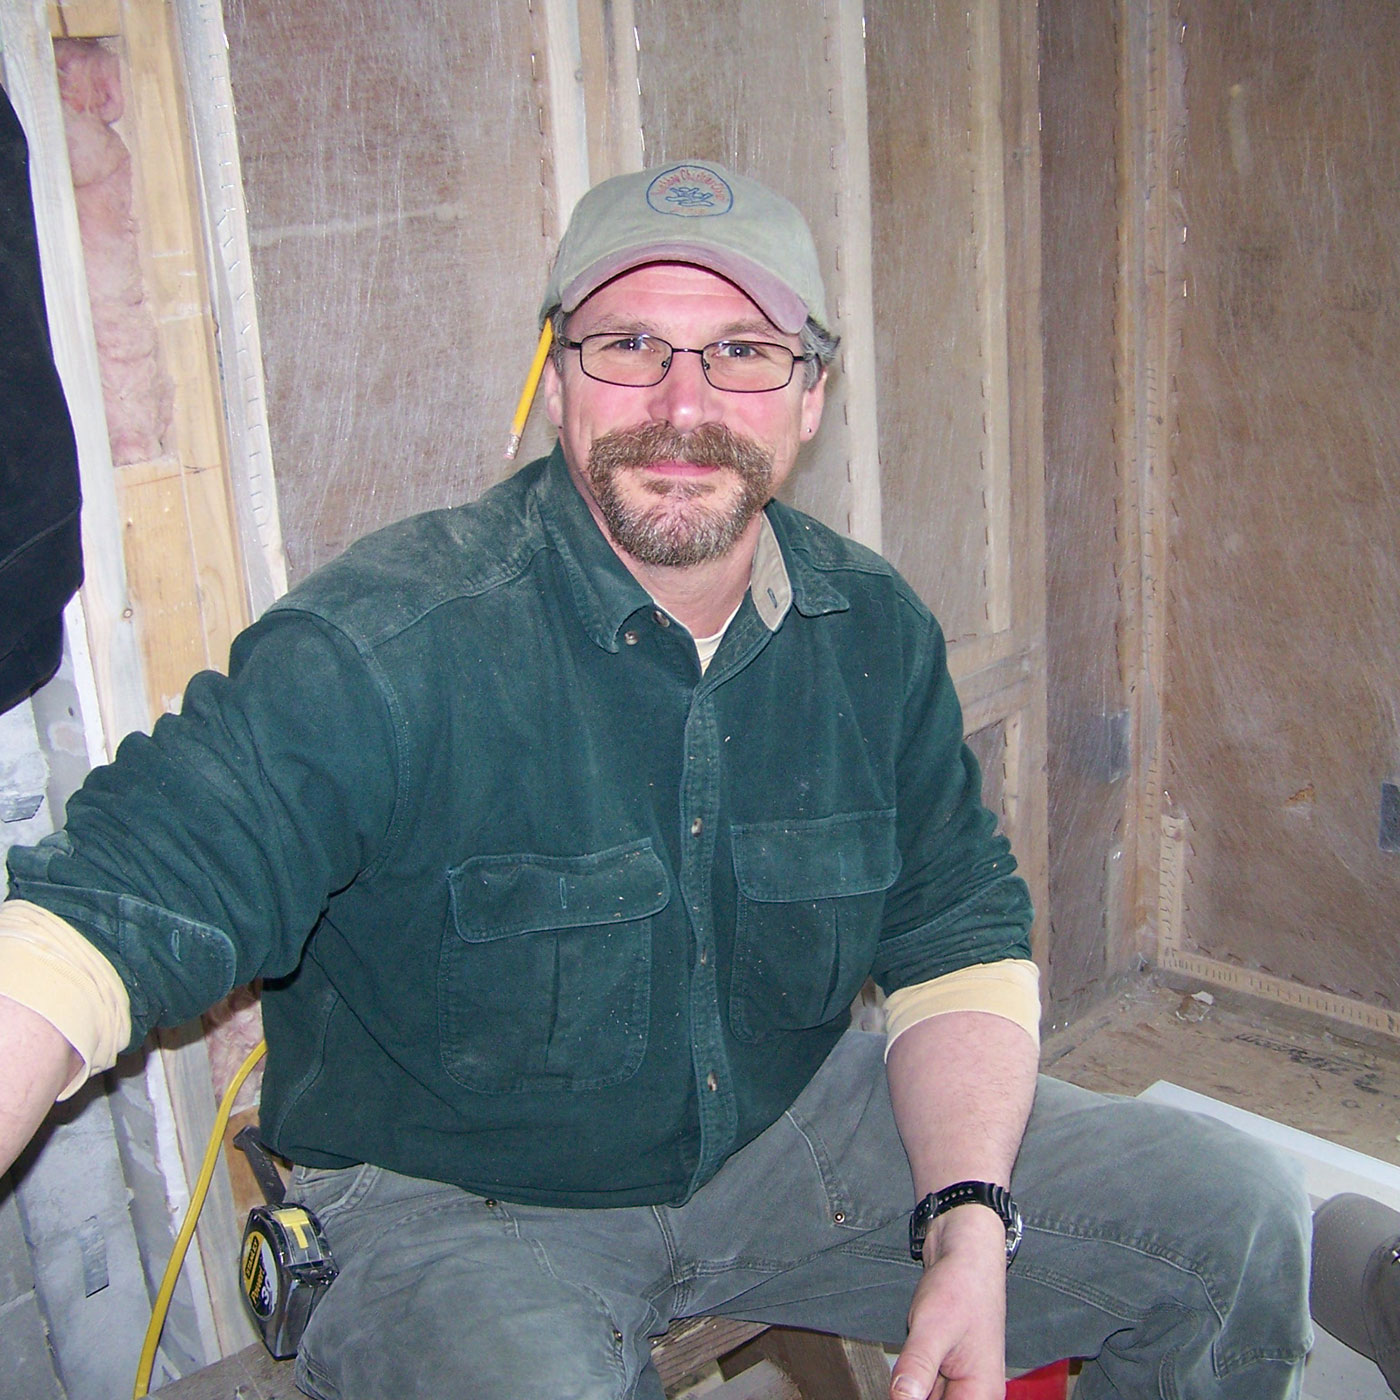 Tom Erskine is a former carpenter turned Warehouse Coordinator for Knickerbocker Group